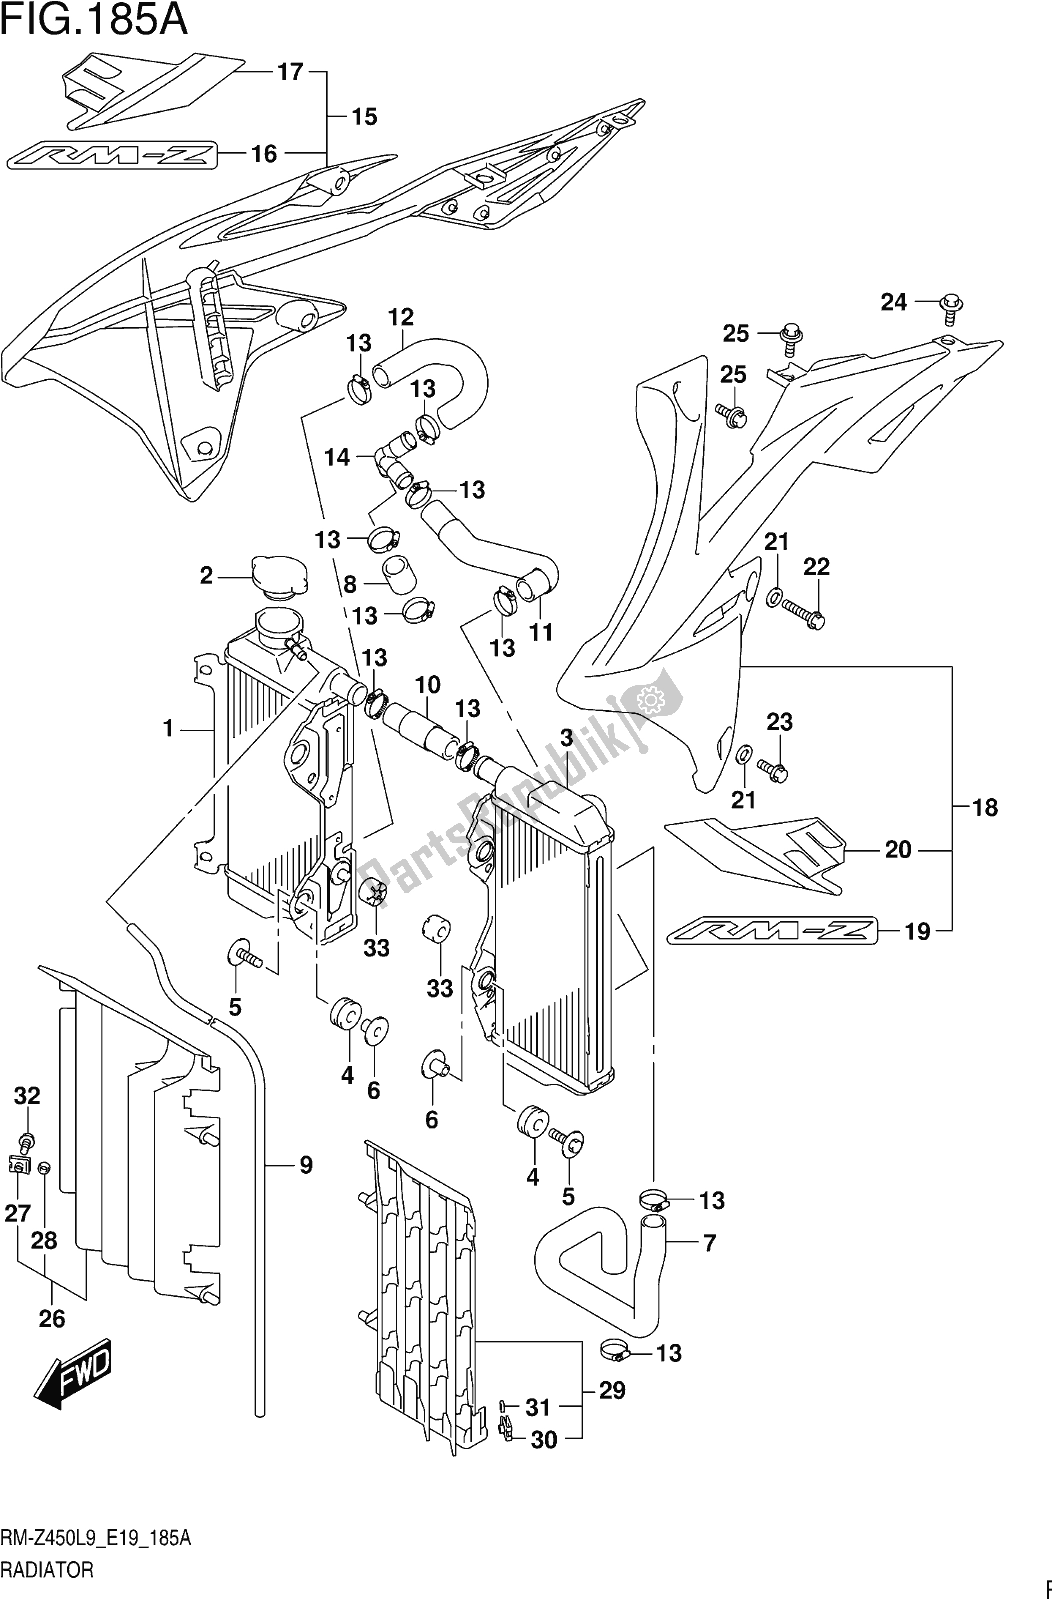 Toutes les pièces pour le Fig. 185a Radiator du Suzuki RM-Z 450 2019